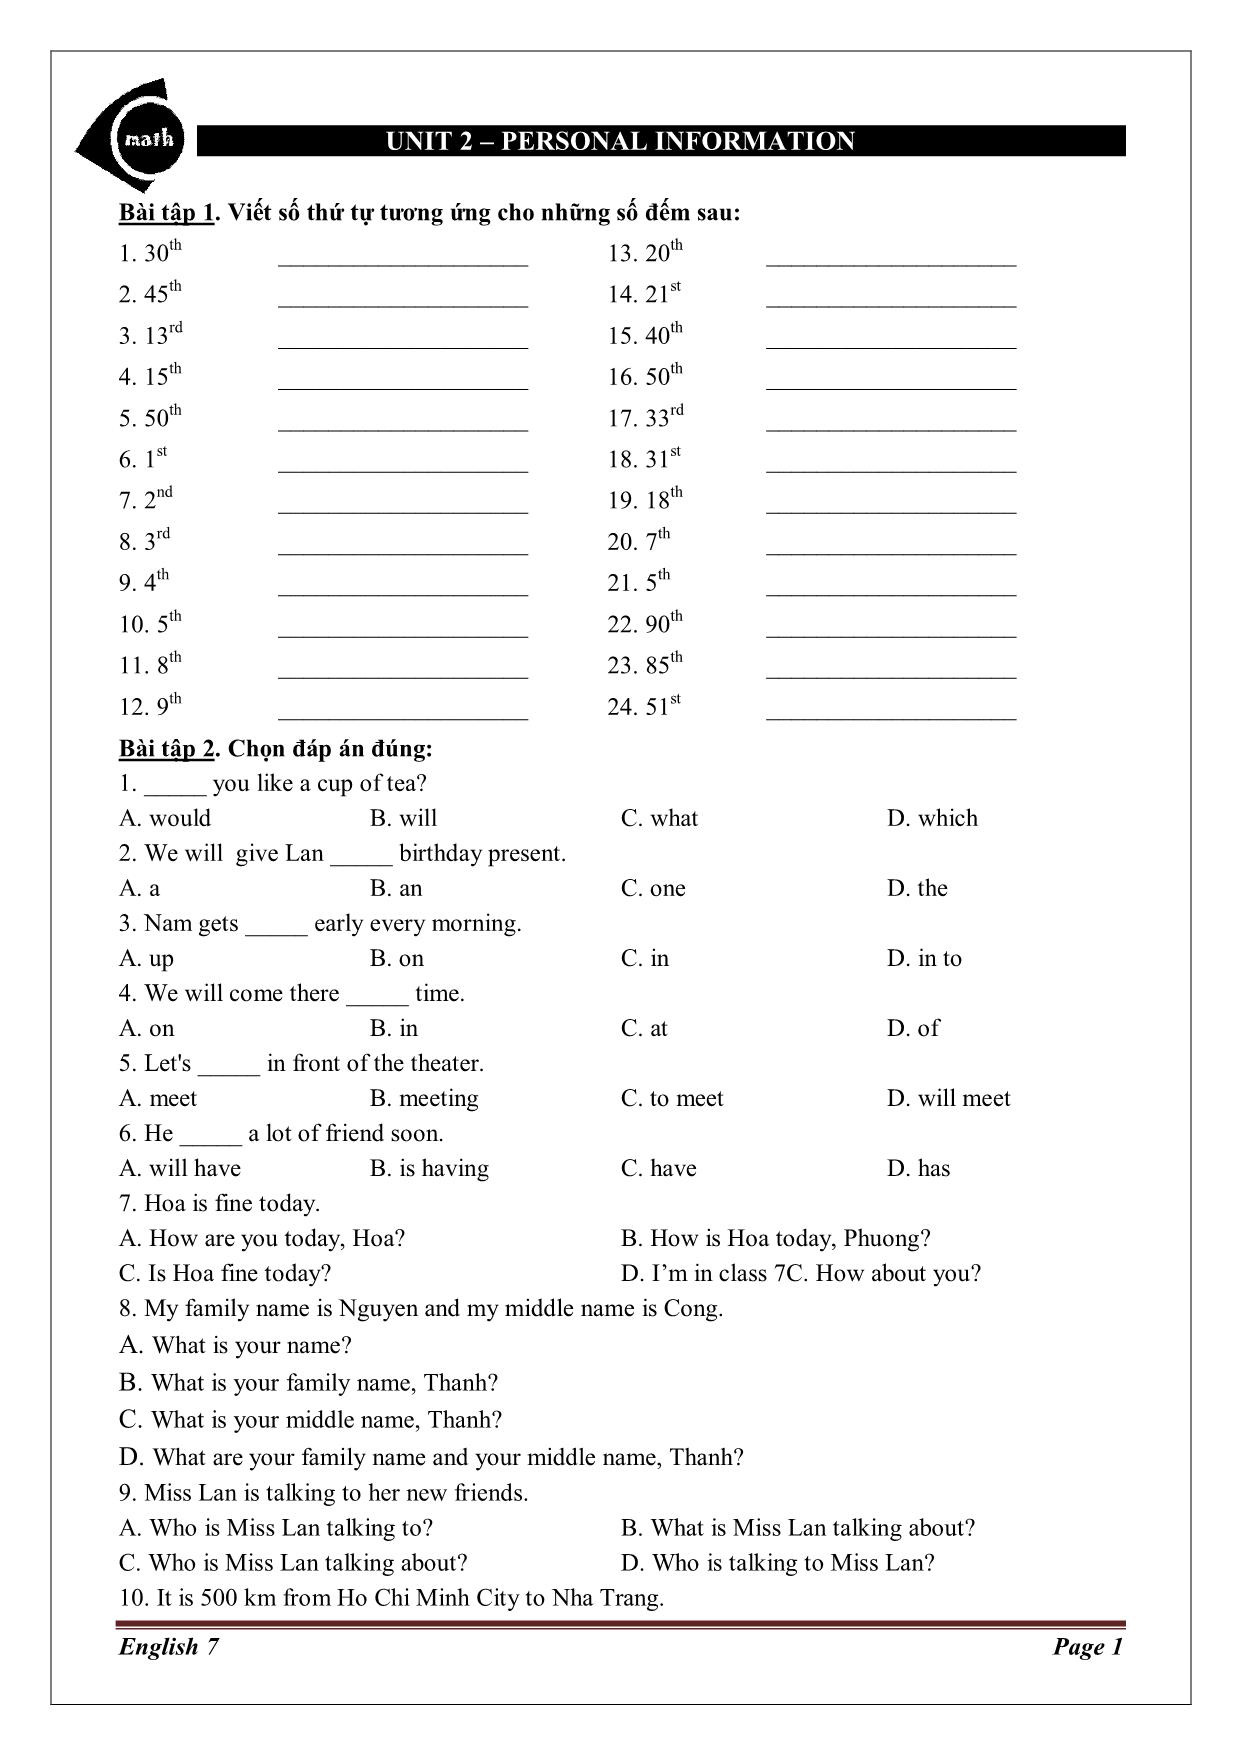 Bài tập tiếng Anh Lớp 7 - Unit 2: Personal information trang 1